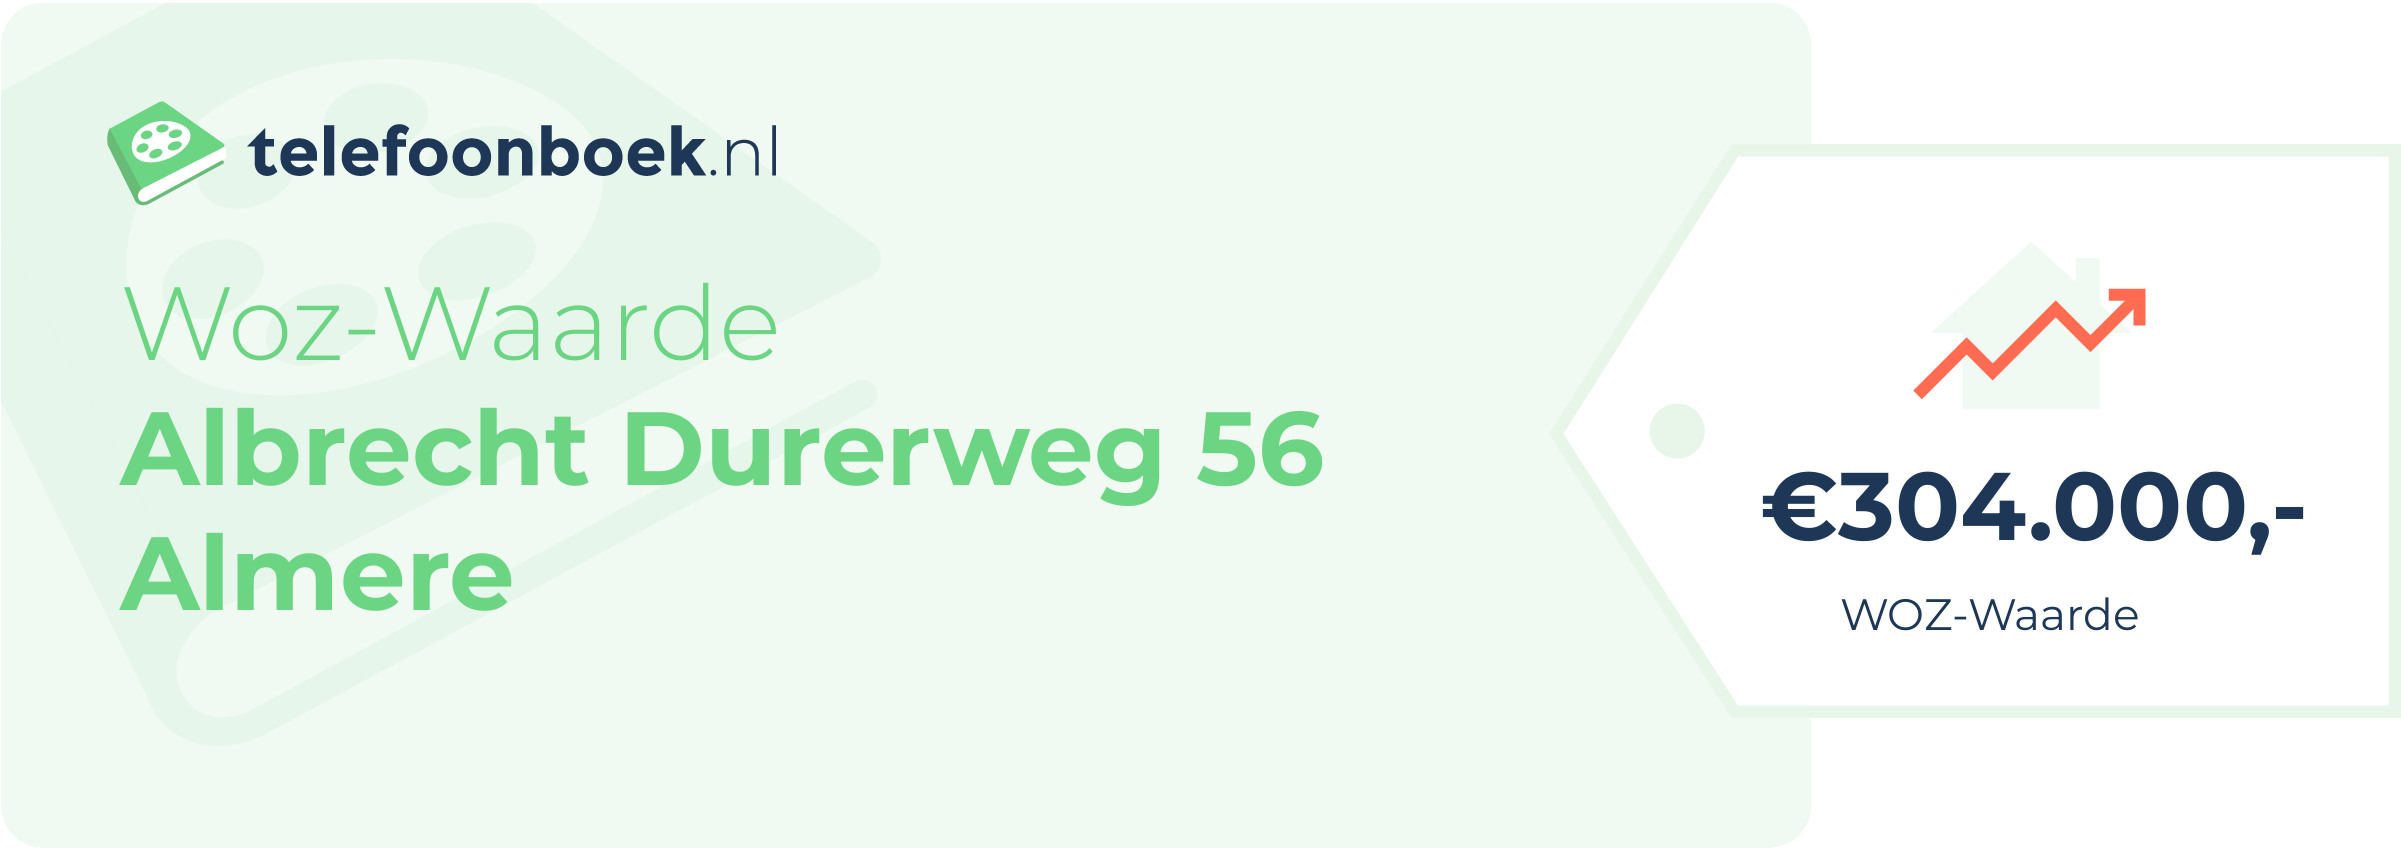 WOZ-waarde Albrecht Durerweg 56 Almere